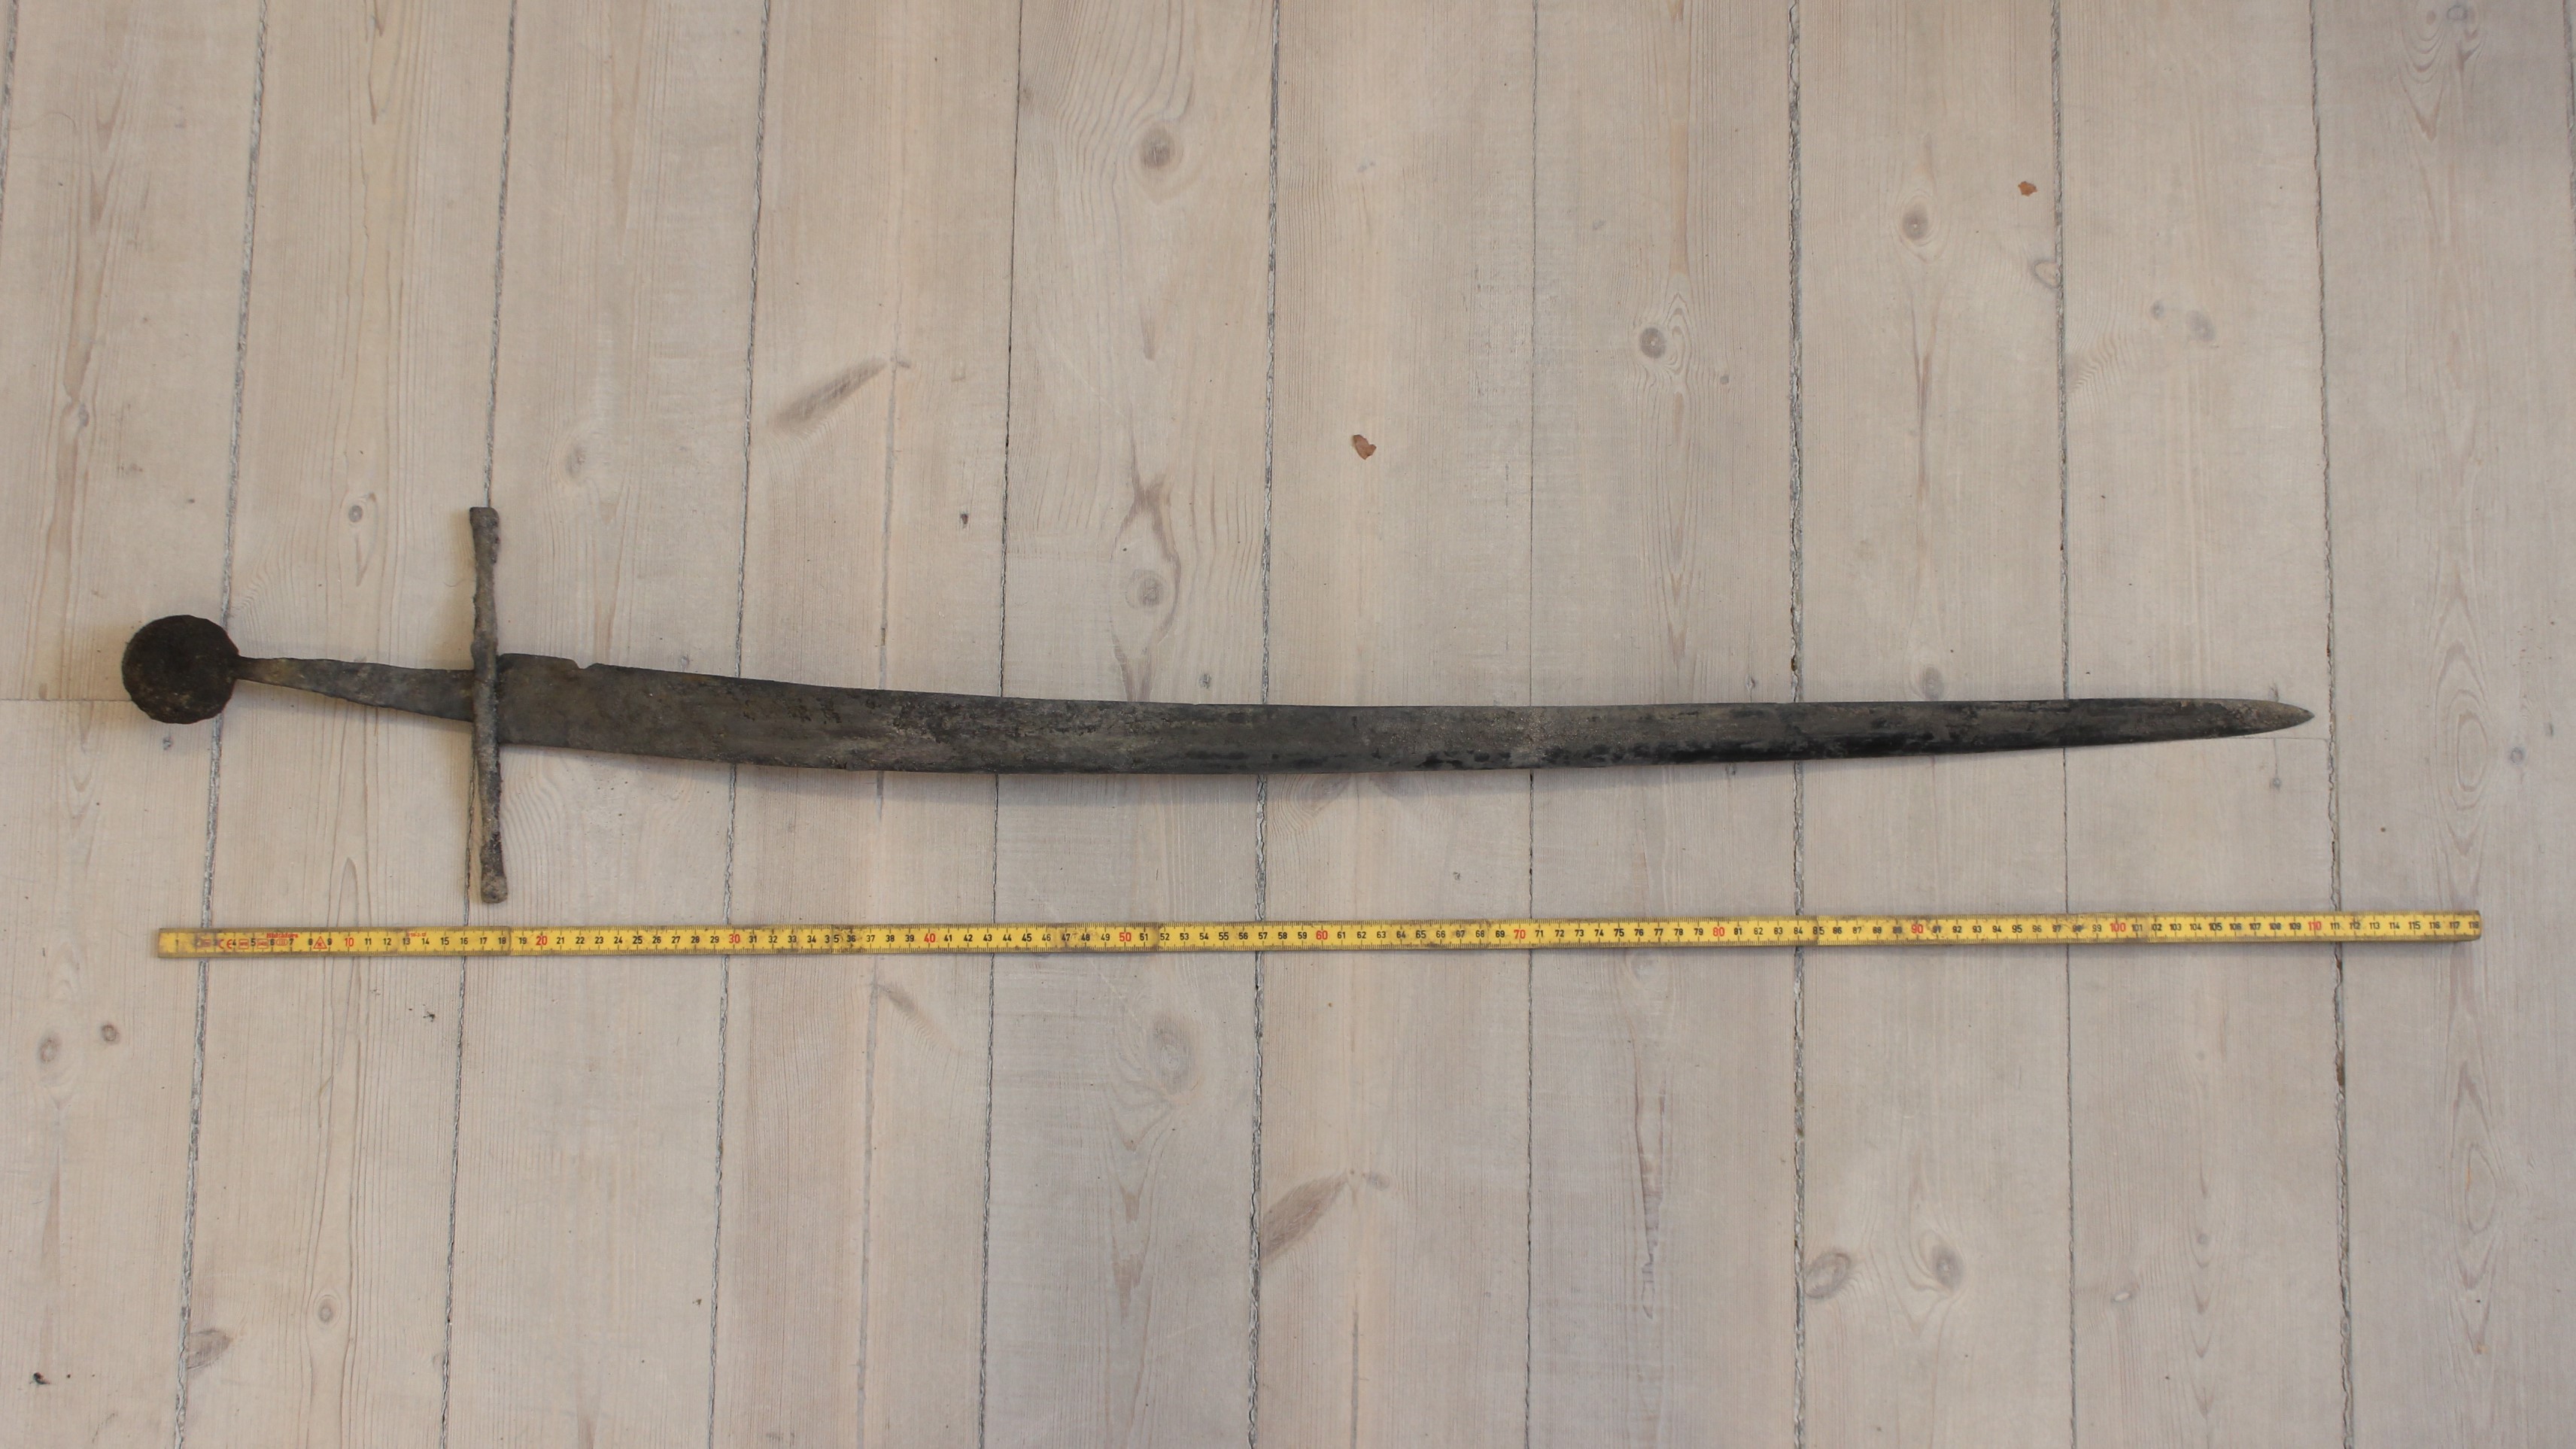 Při hloubení kanalizace byl nalezen 700 let starý meč v perfektním stavu |  LovecPokladu.cz